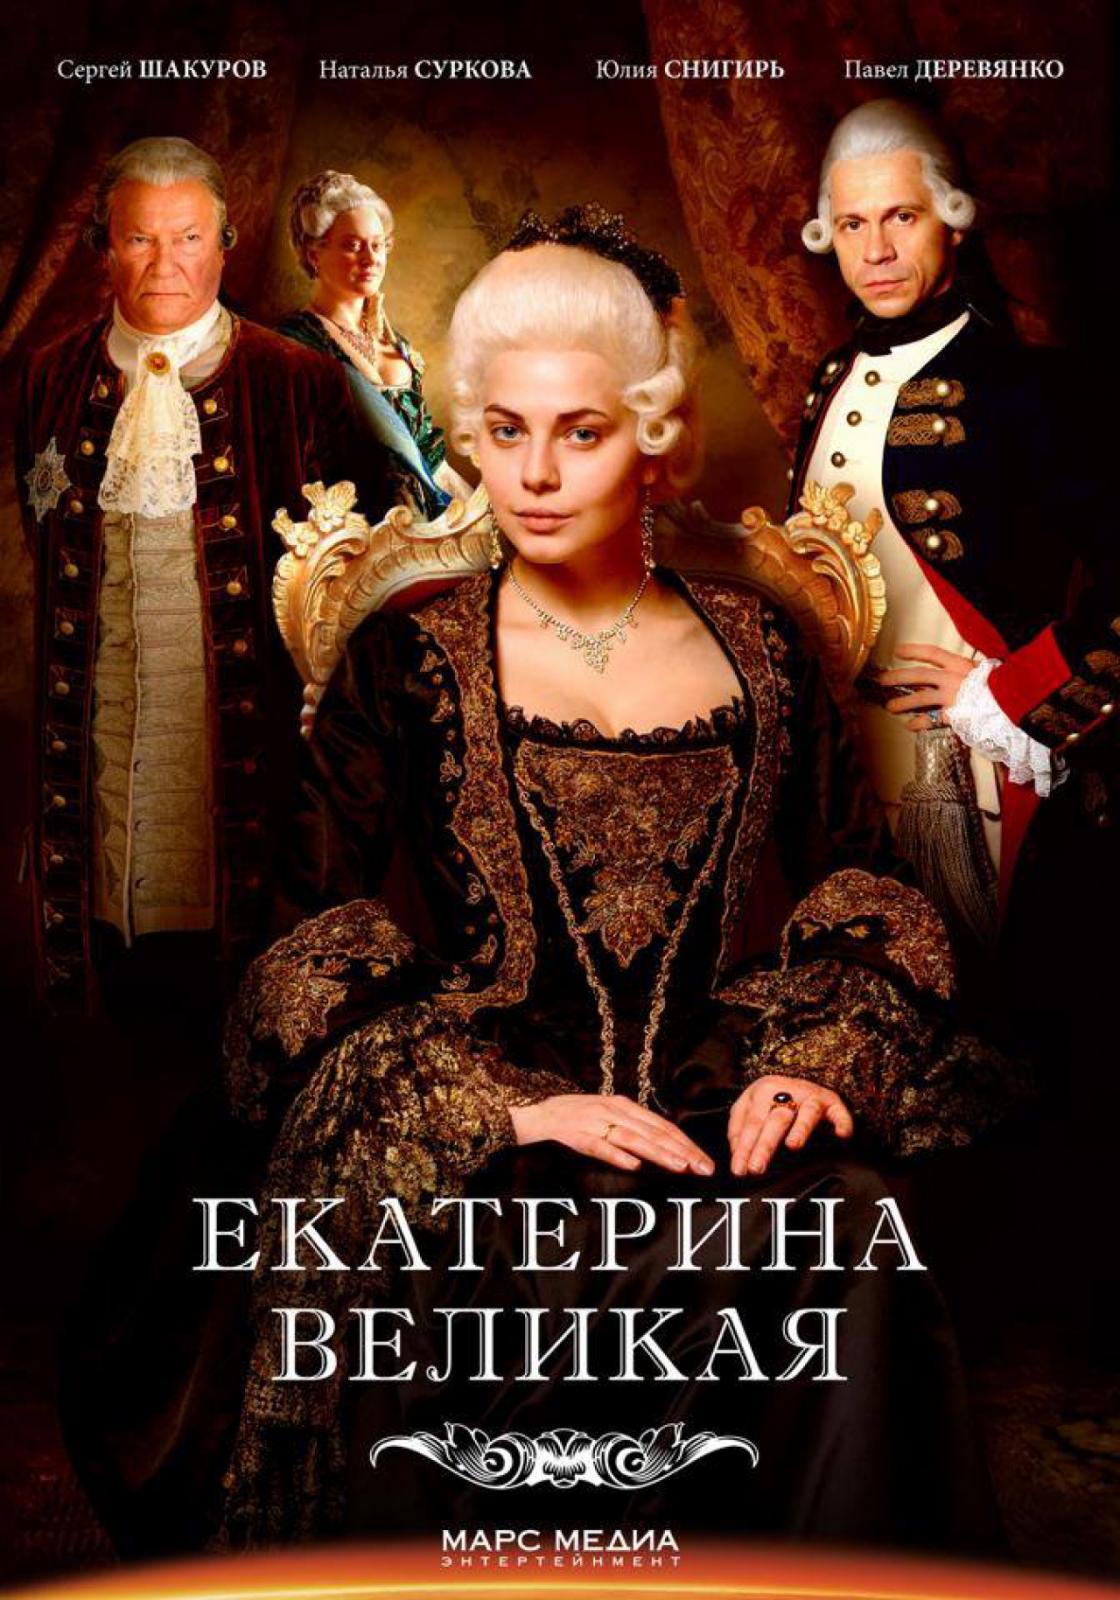 Сериал Екатерина Великая (Россия)